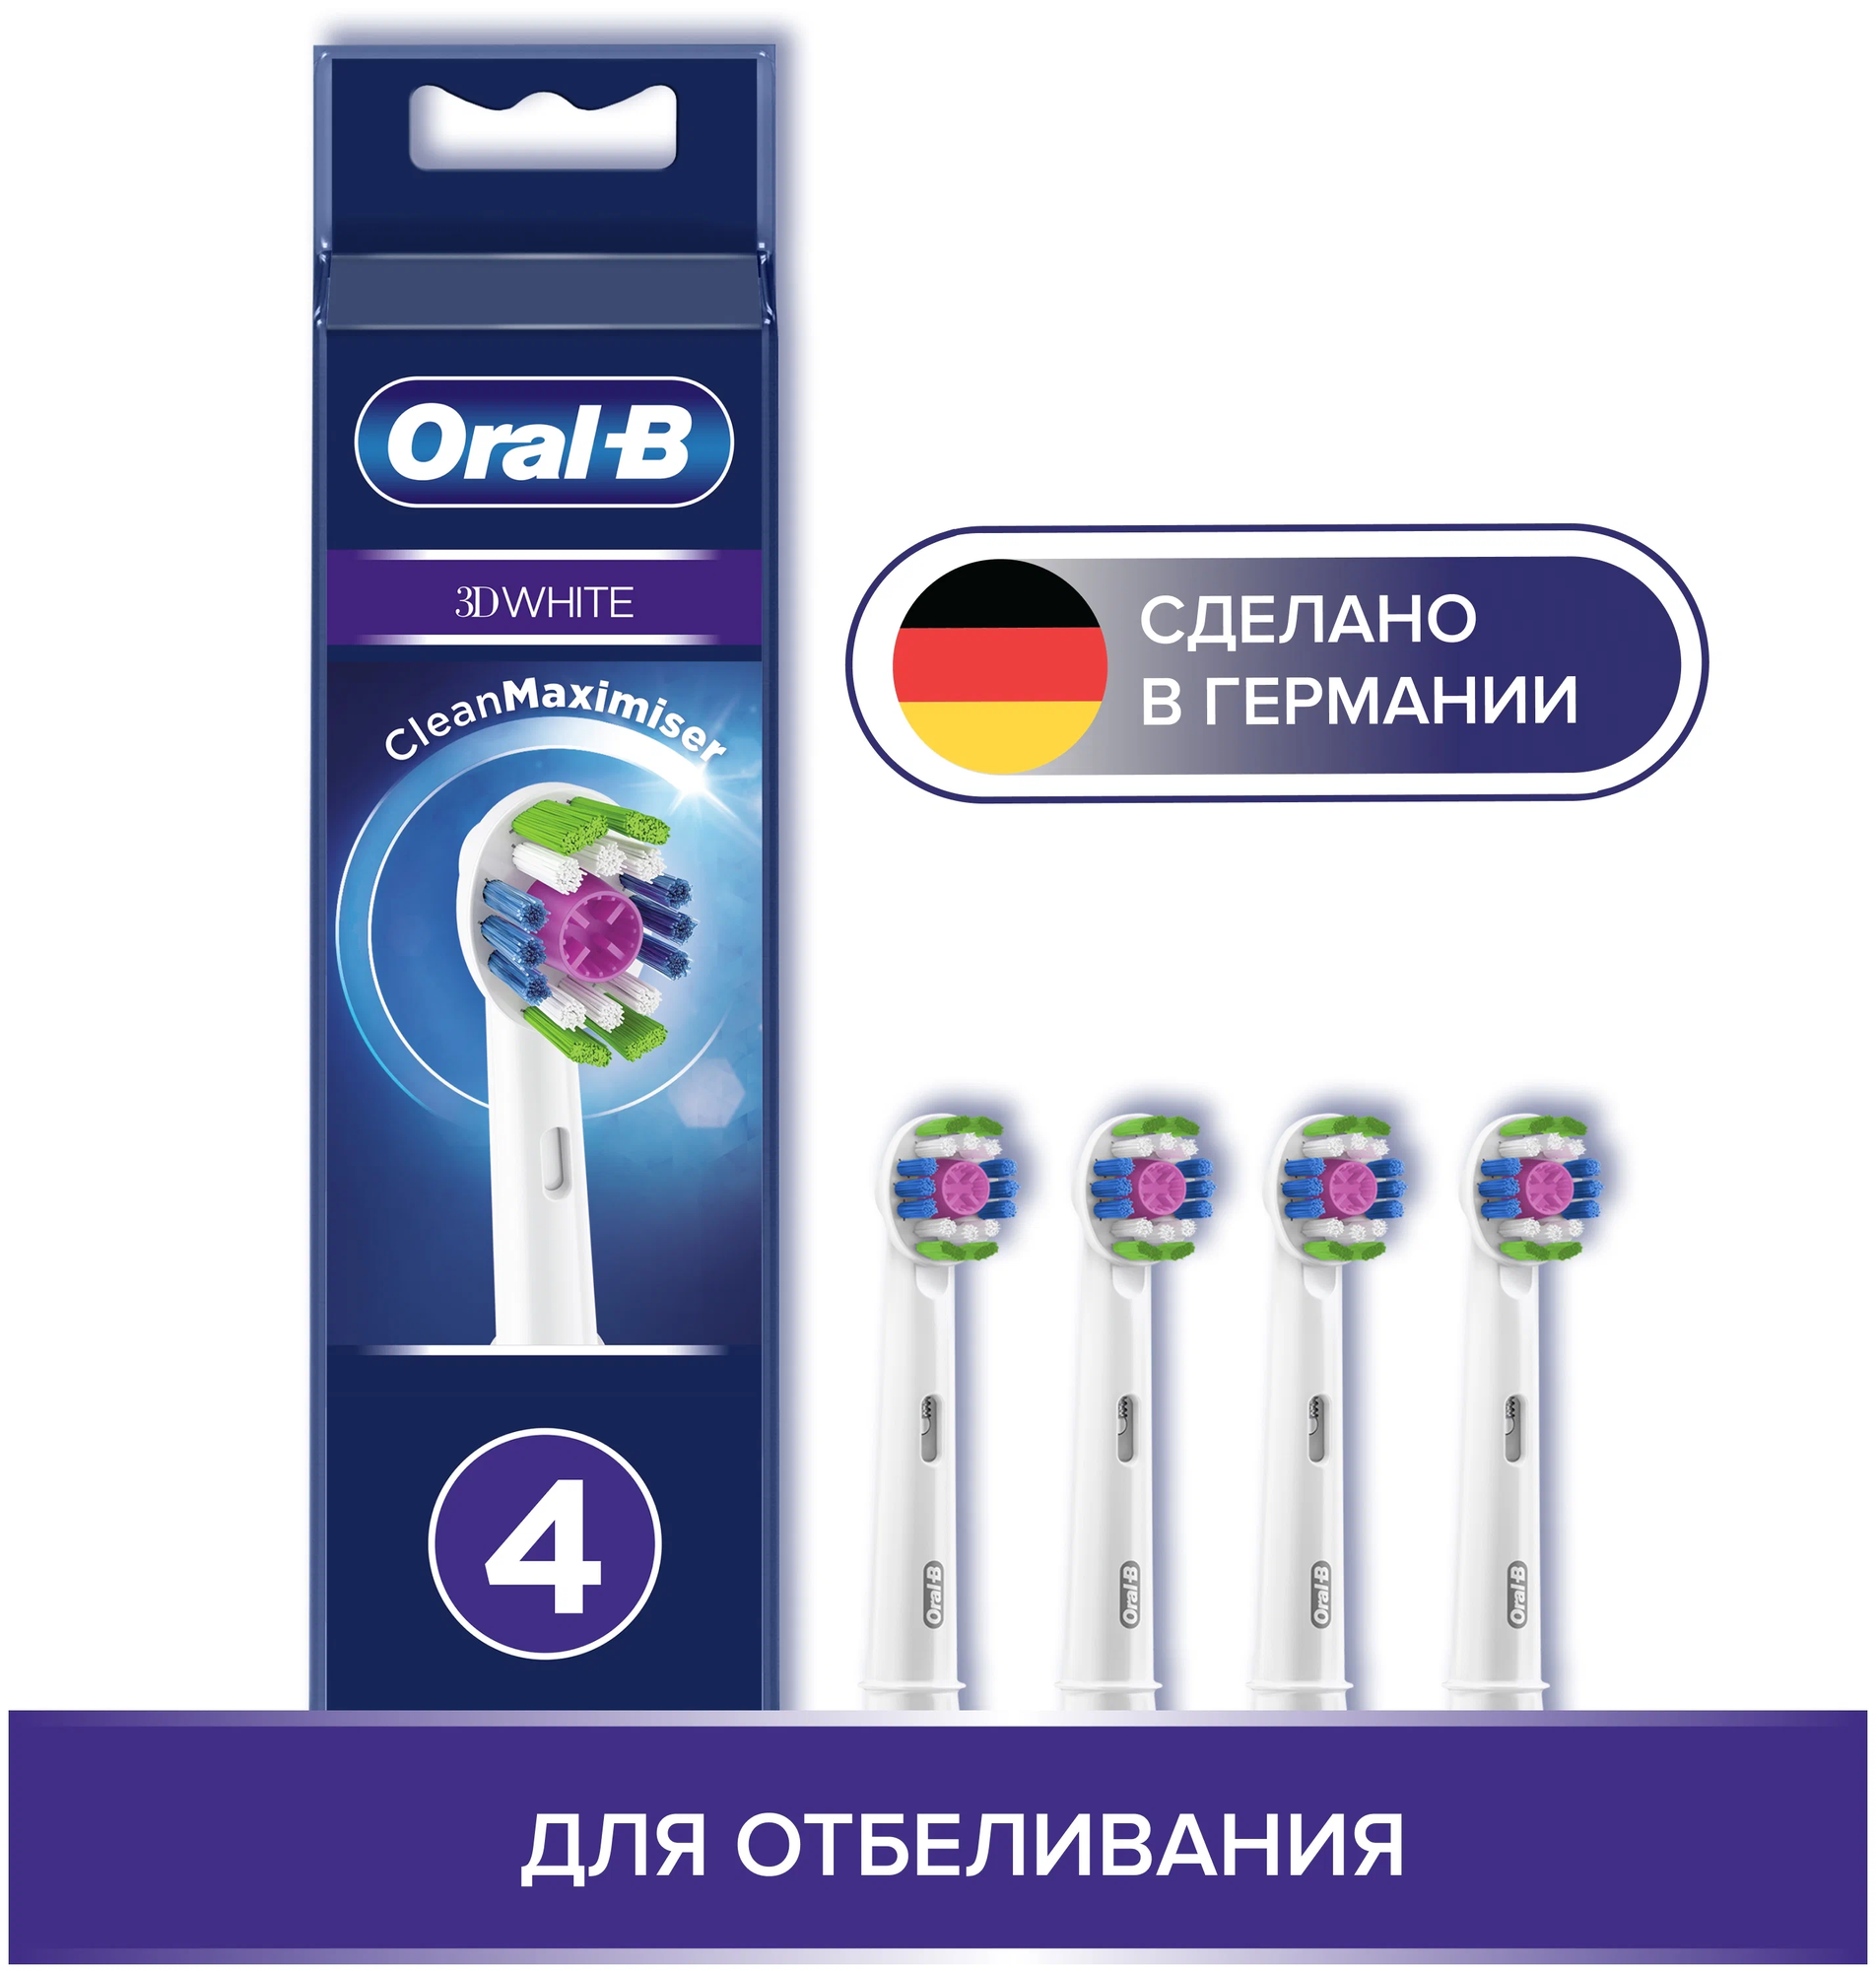 Набор насадок Oral-B 3D White CleanMaximiser для ирригатора и электрической щетки, белый, 4 шт.